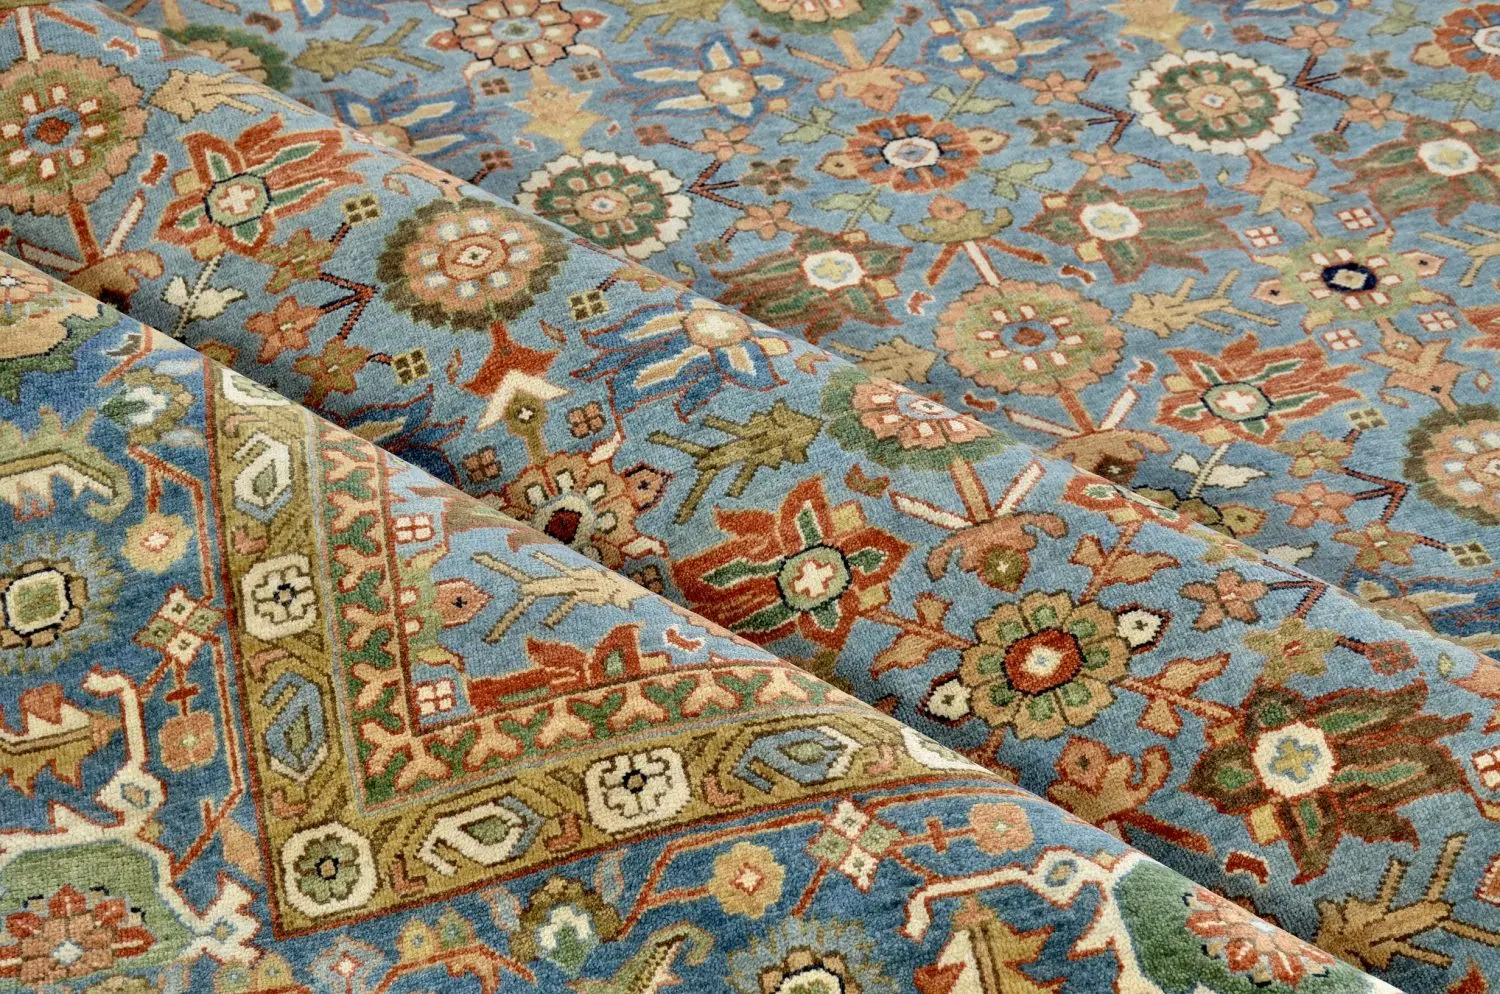 Bijar 8' 1" x 10' 1" Handmade Area rug